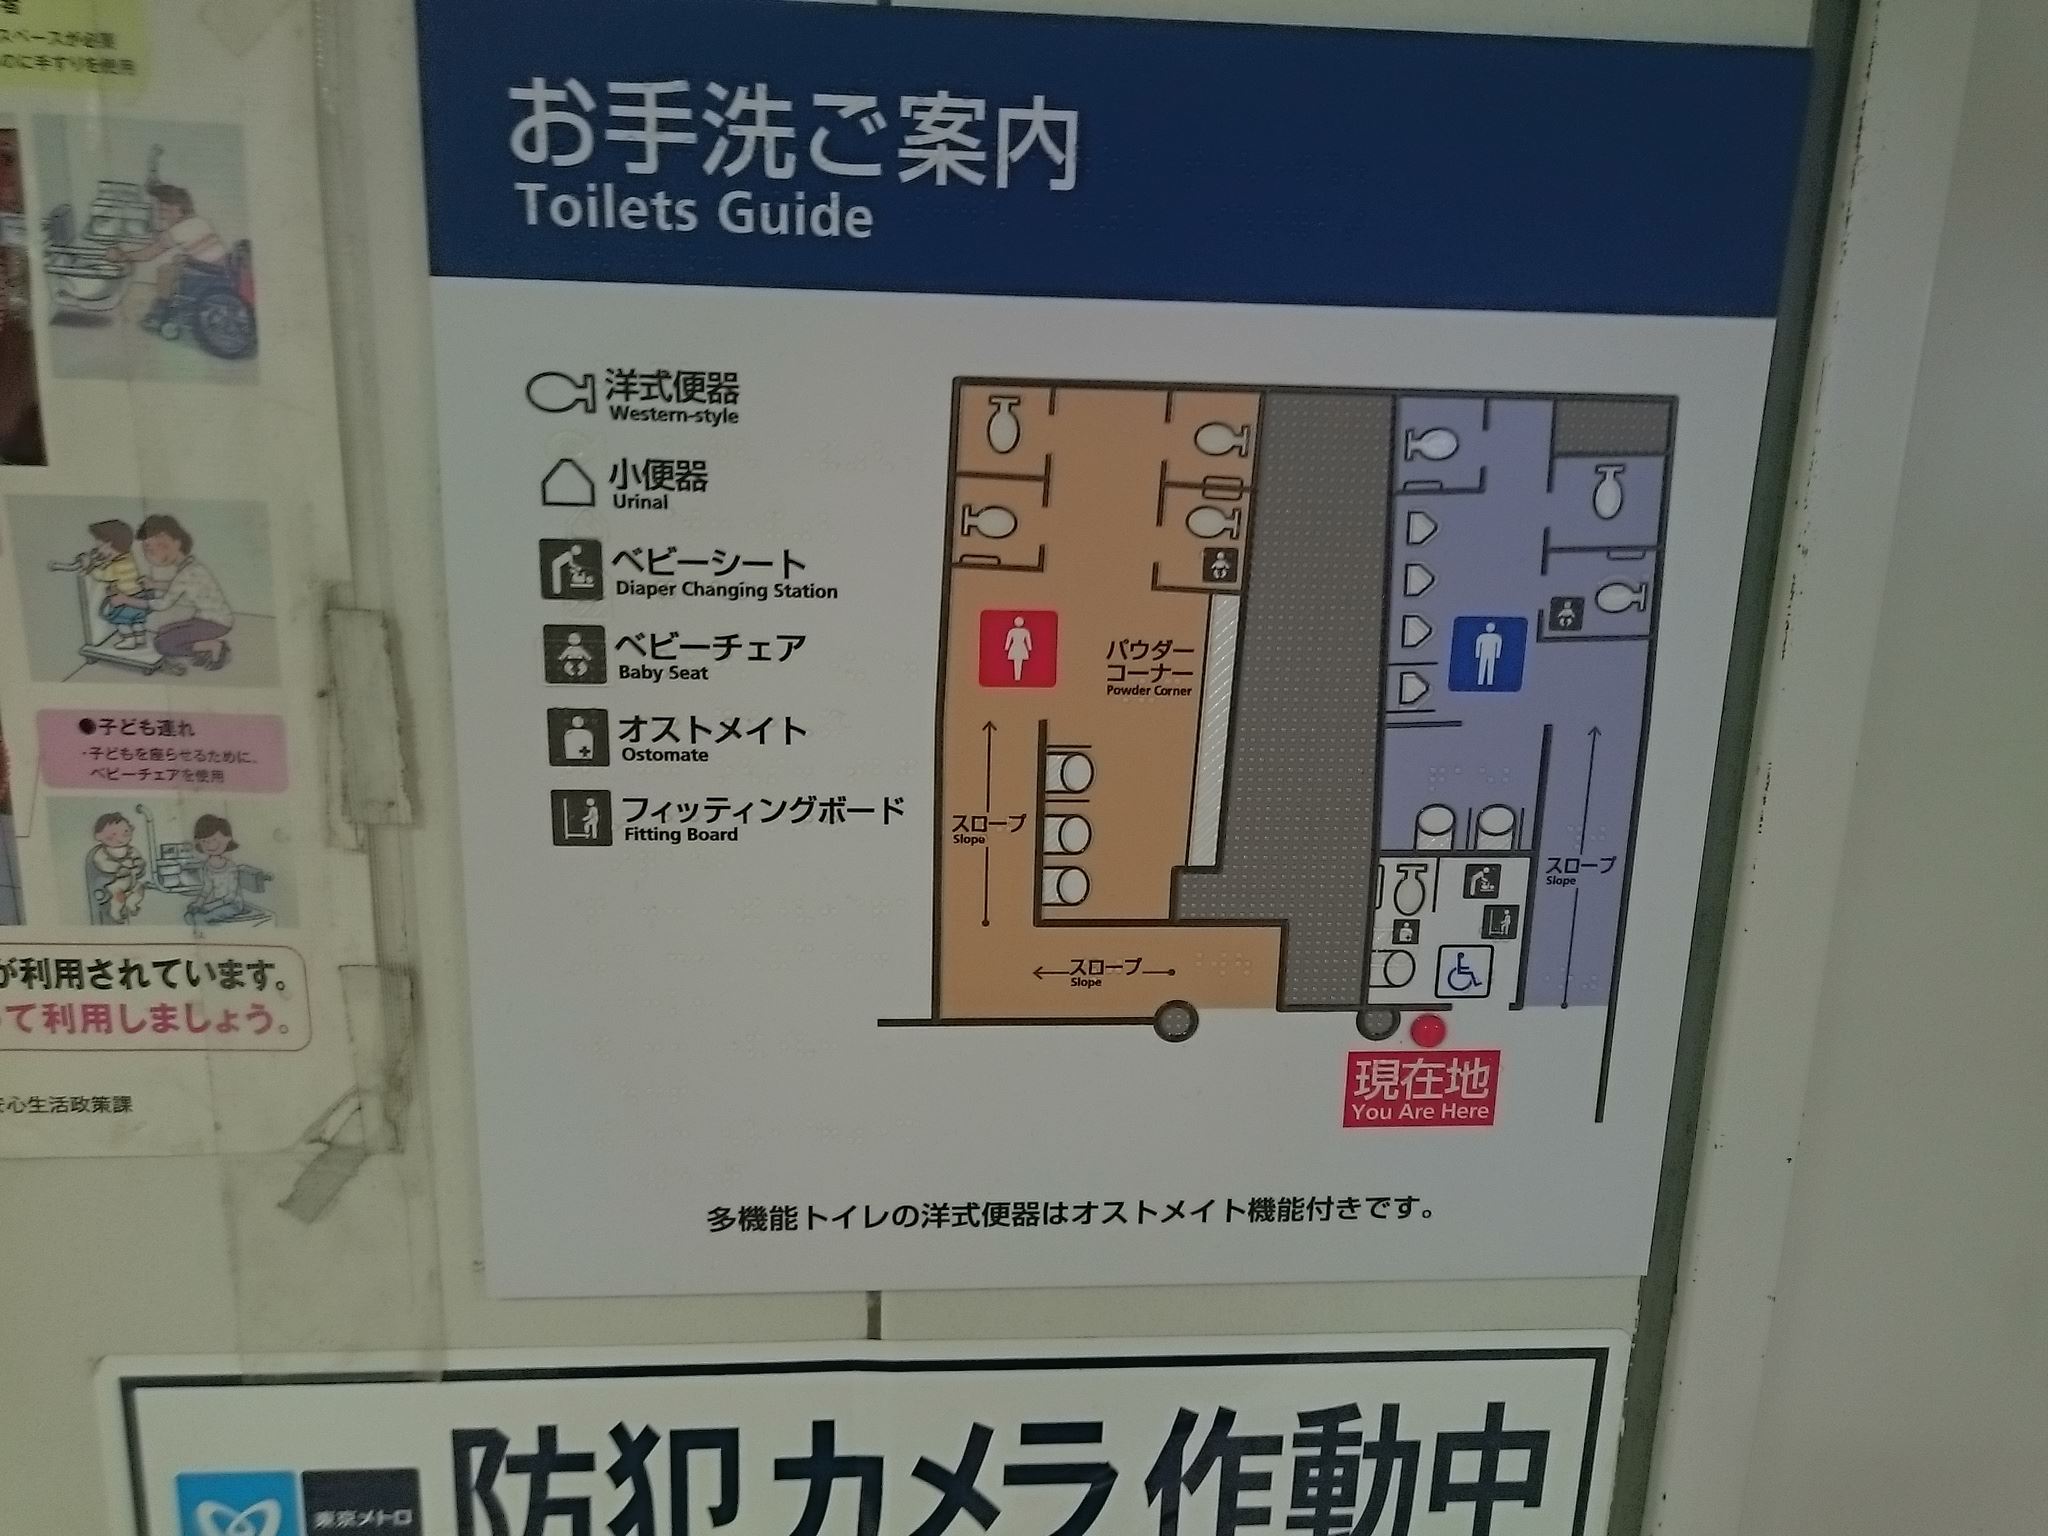 新宿三丁目駅(メトロ) トイレペディア